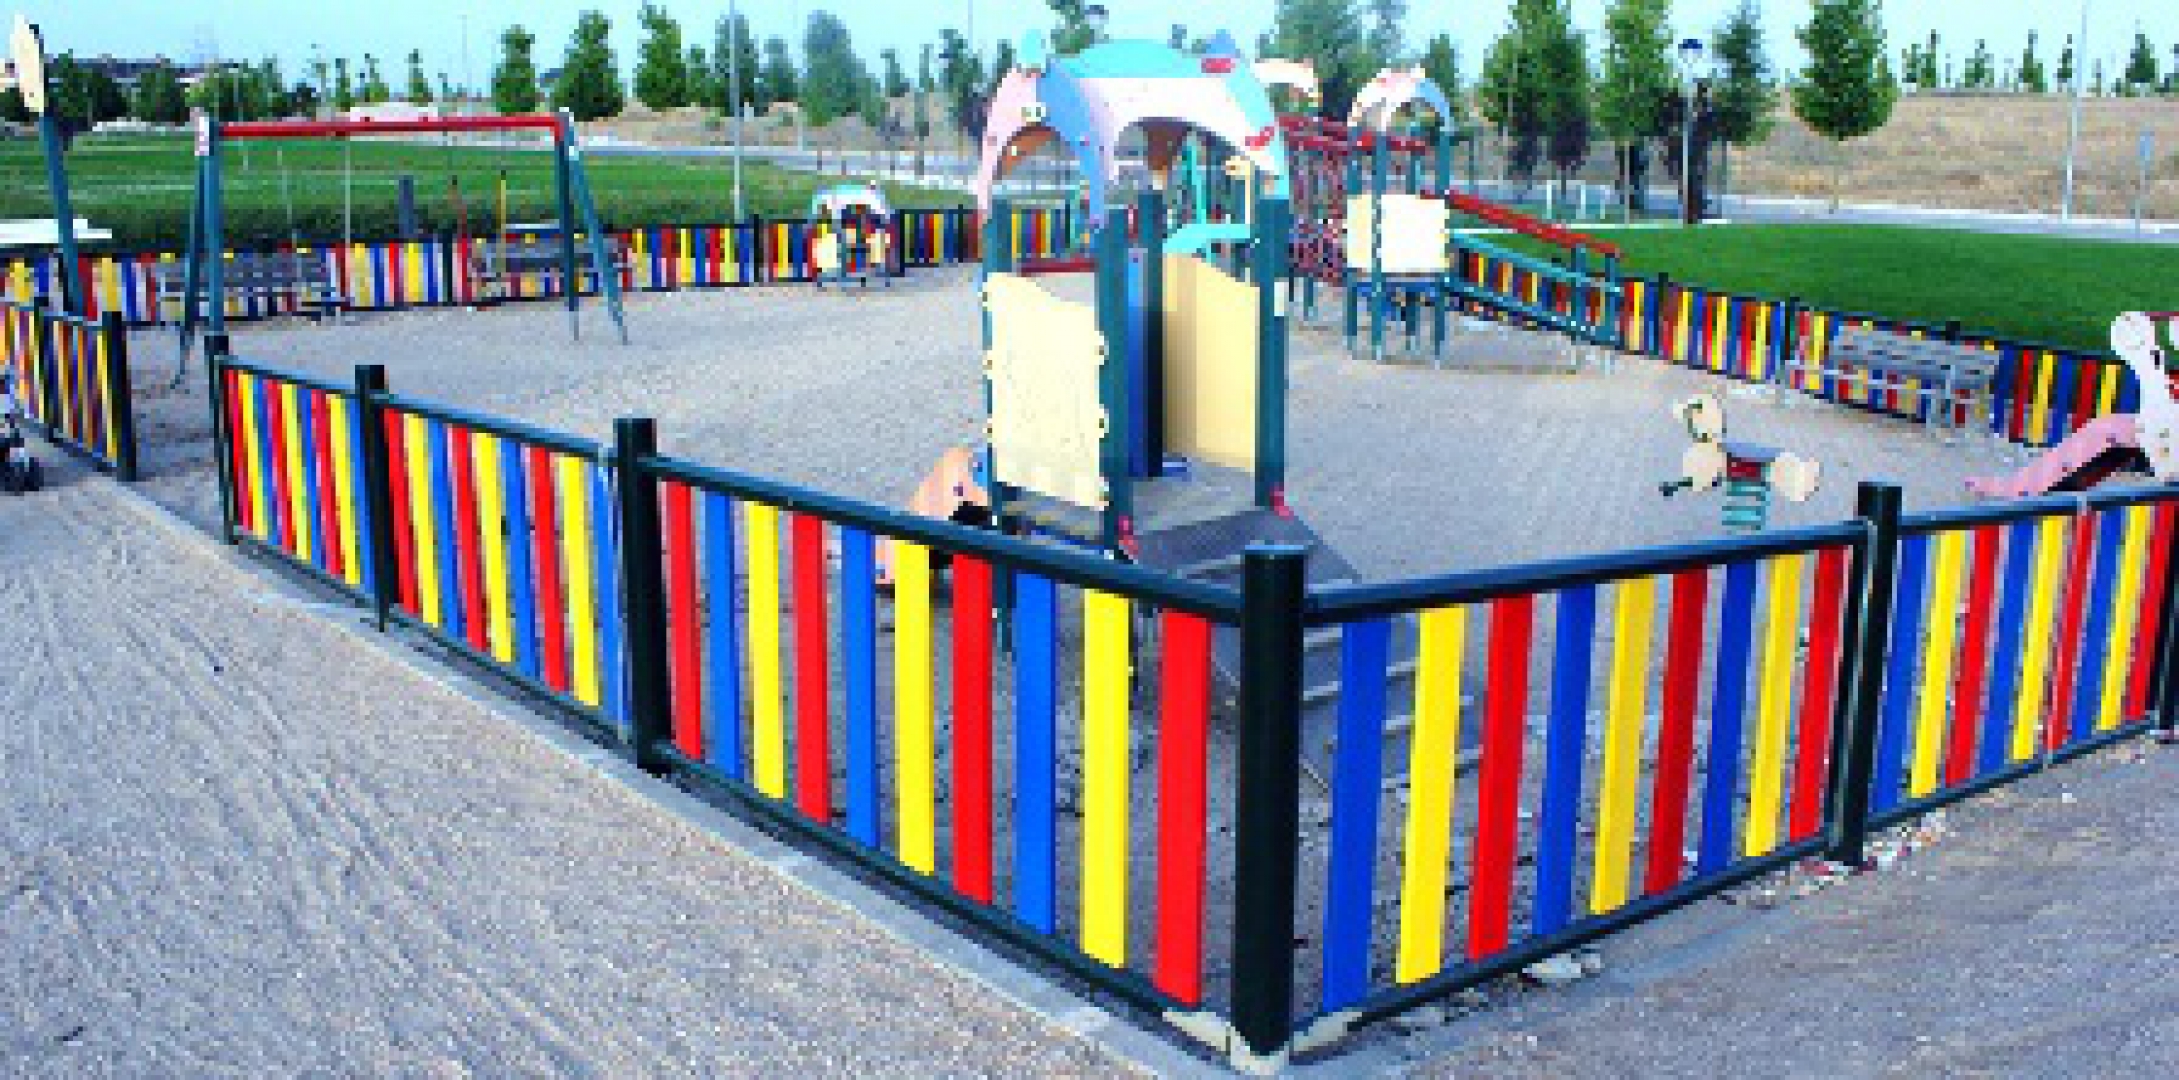 Remodelado integralmente el parque infantil Vallezate